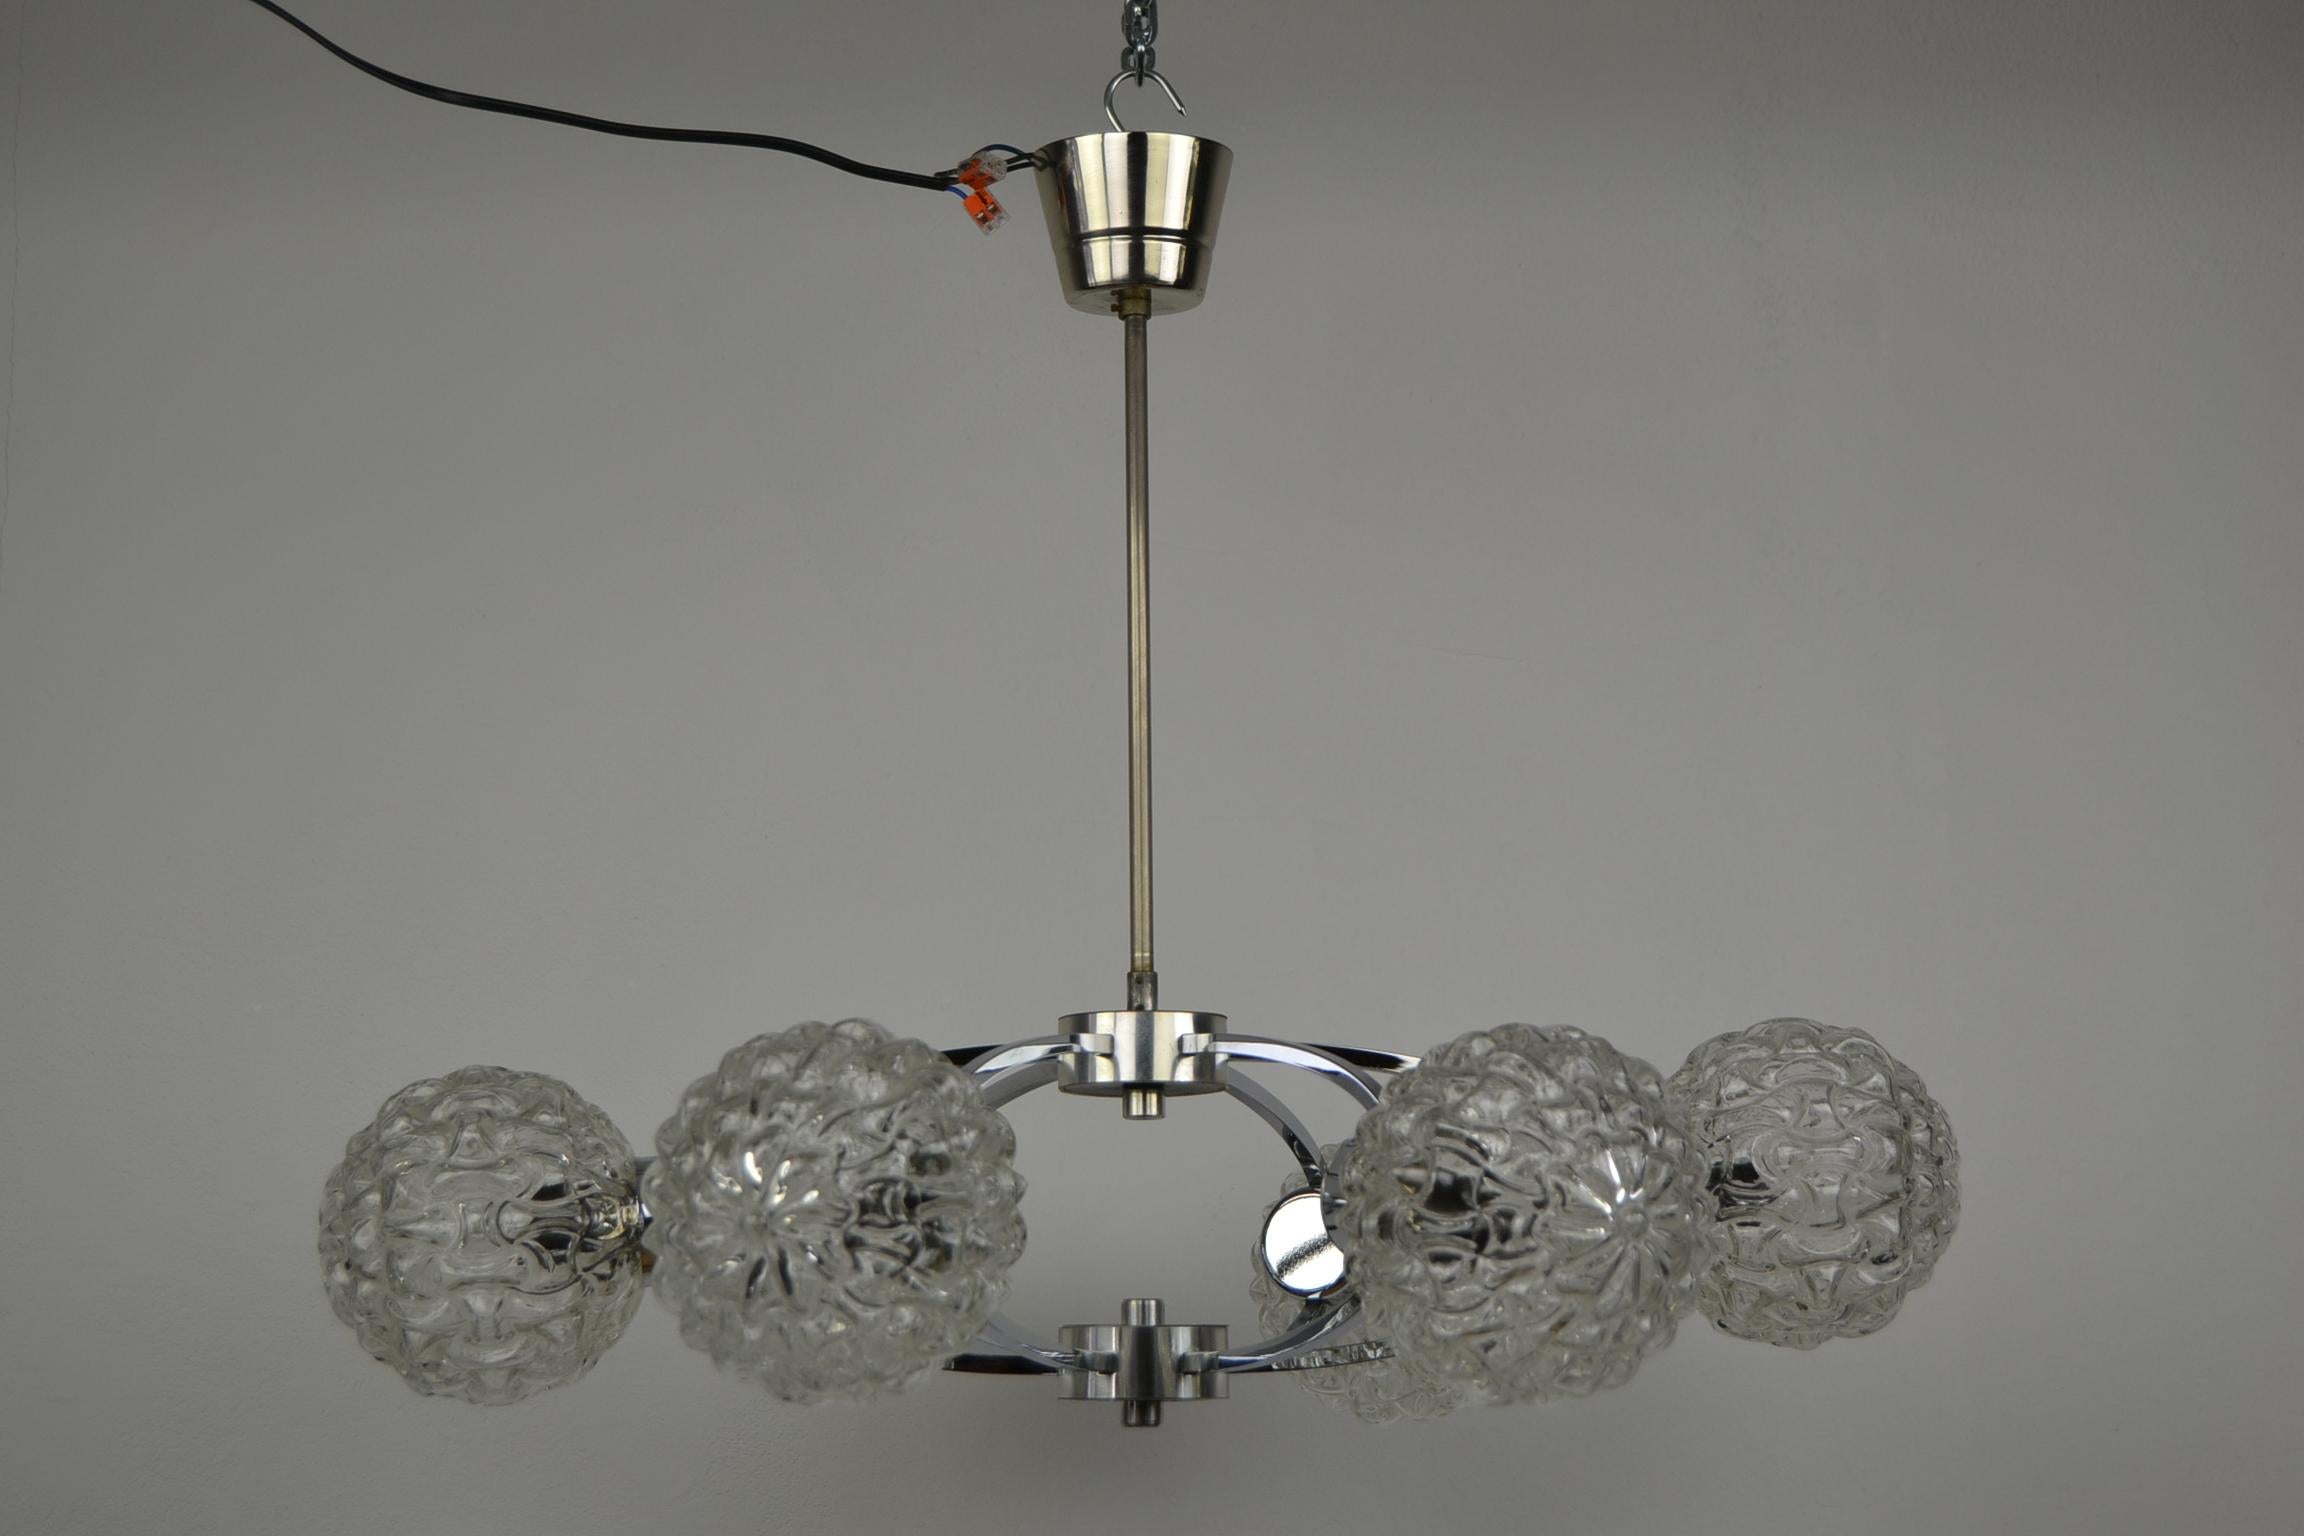 Lustre atomique de la NO AGE. 
Lampe allemande Sputnik en chrome et verre datant des années 1960. Ce lustre Orbital a été fabriqué en Allemagne.
Il s'agit d'un plafonnier de style moderne avec un très beau chrome brillant et 6 magnifiques abat-jours